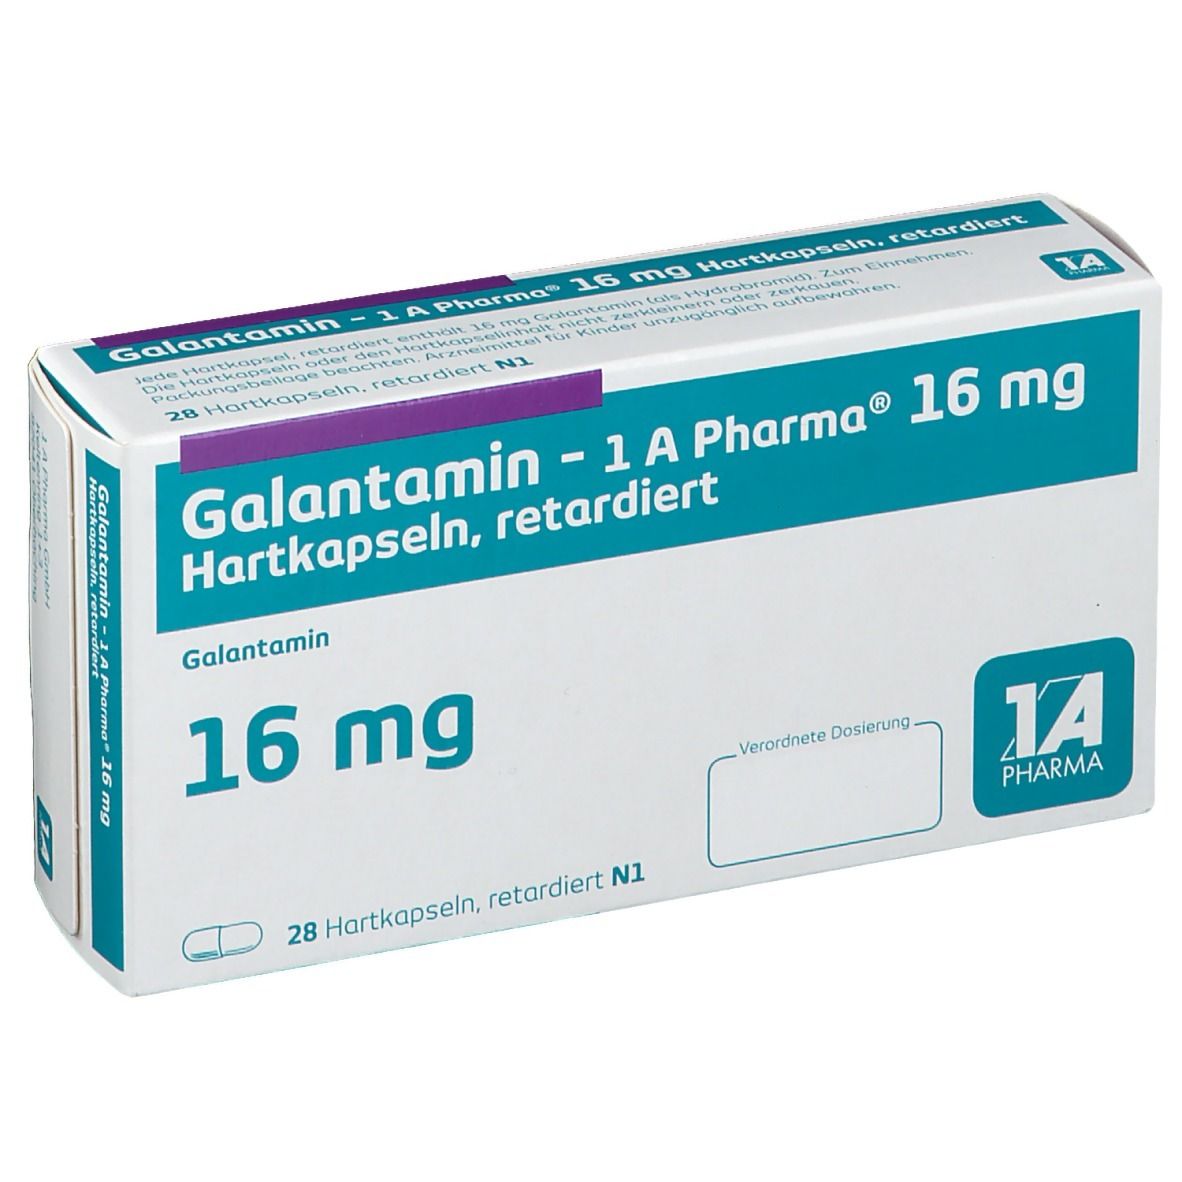 Galantamin - 1 A Pharma® 16 mg